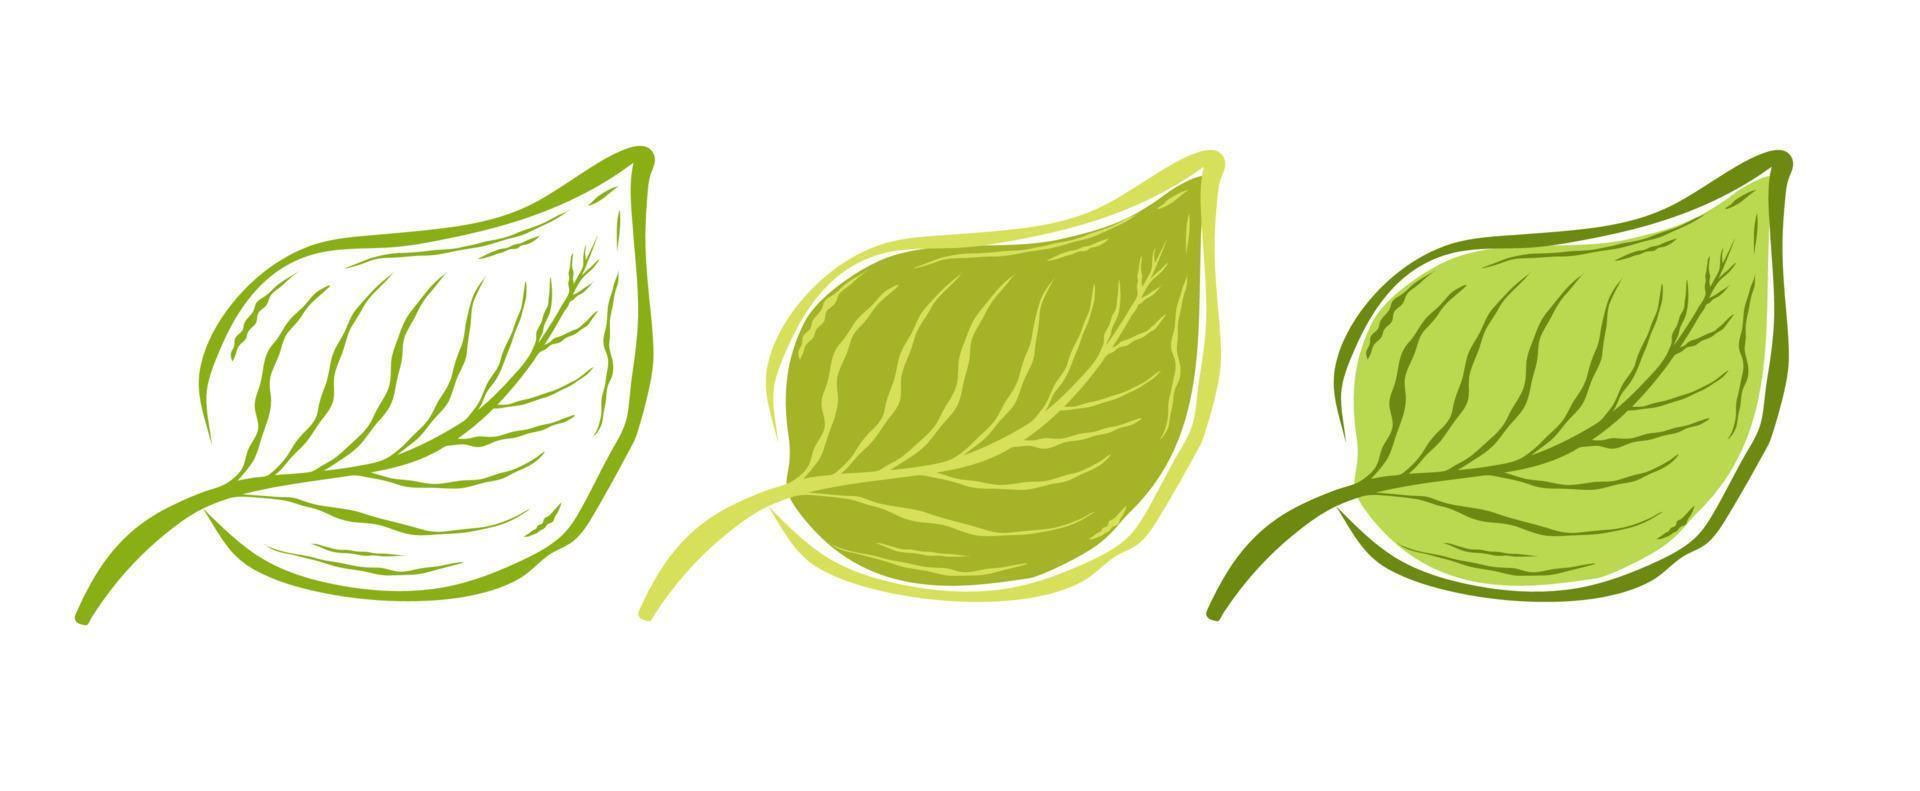 icone stabilite dell'annata di vettore della foglia. illustrazione vettoriale di foglie su sfondo bianco in stile doodle. prodotto ecologico.